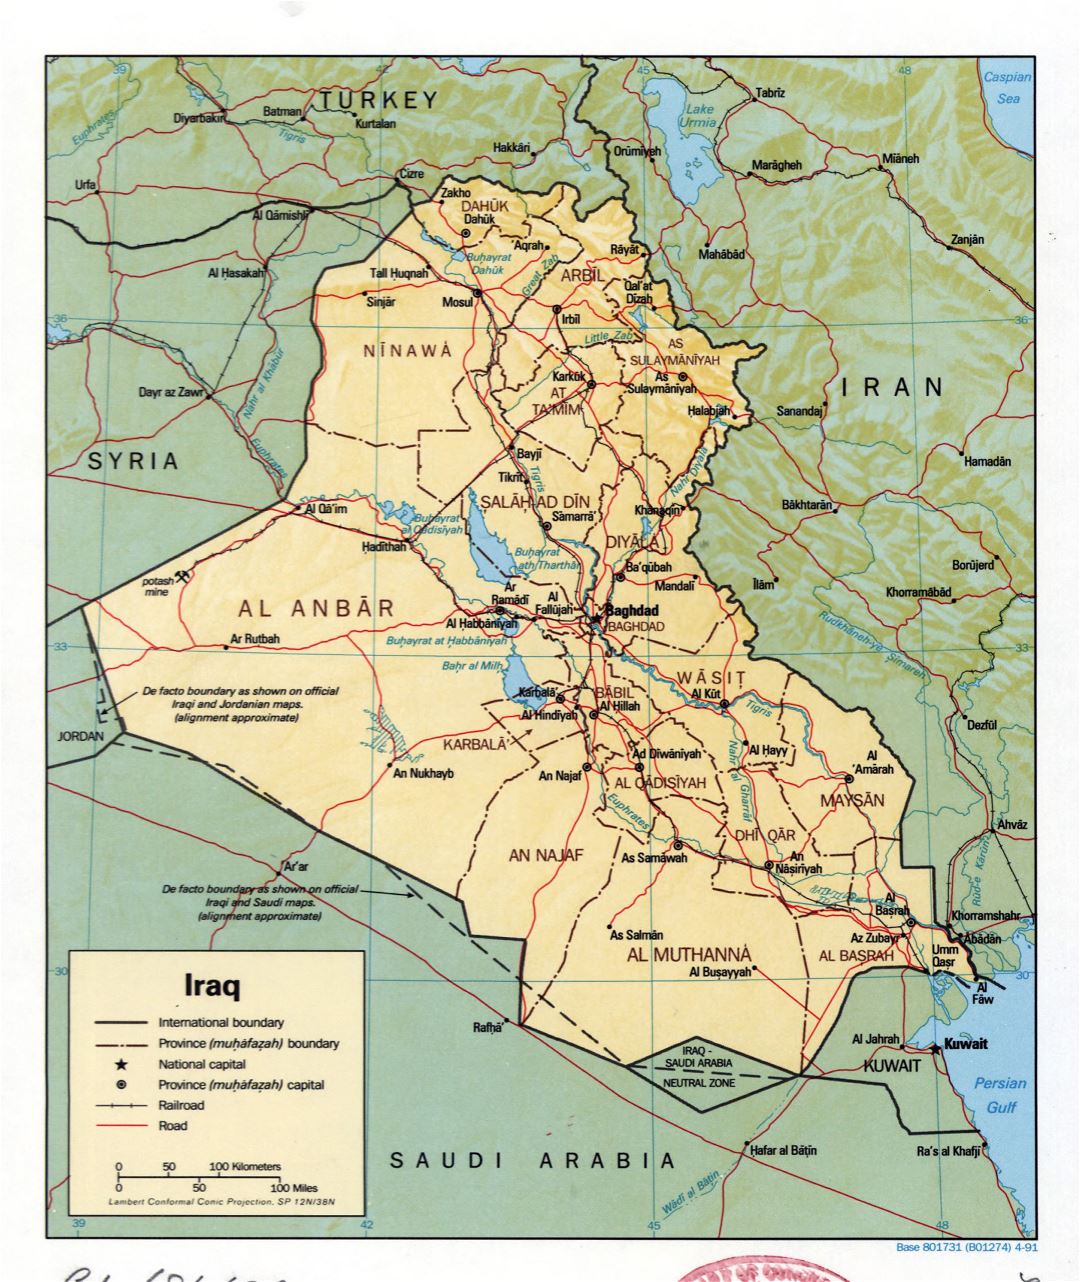 Grande detallado mapa político y administrativo de Iraq con relieve, caminos, ferrocarriles y principales ciudades - 1991